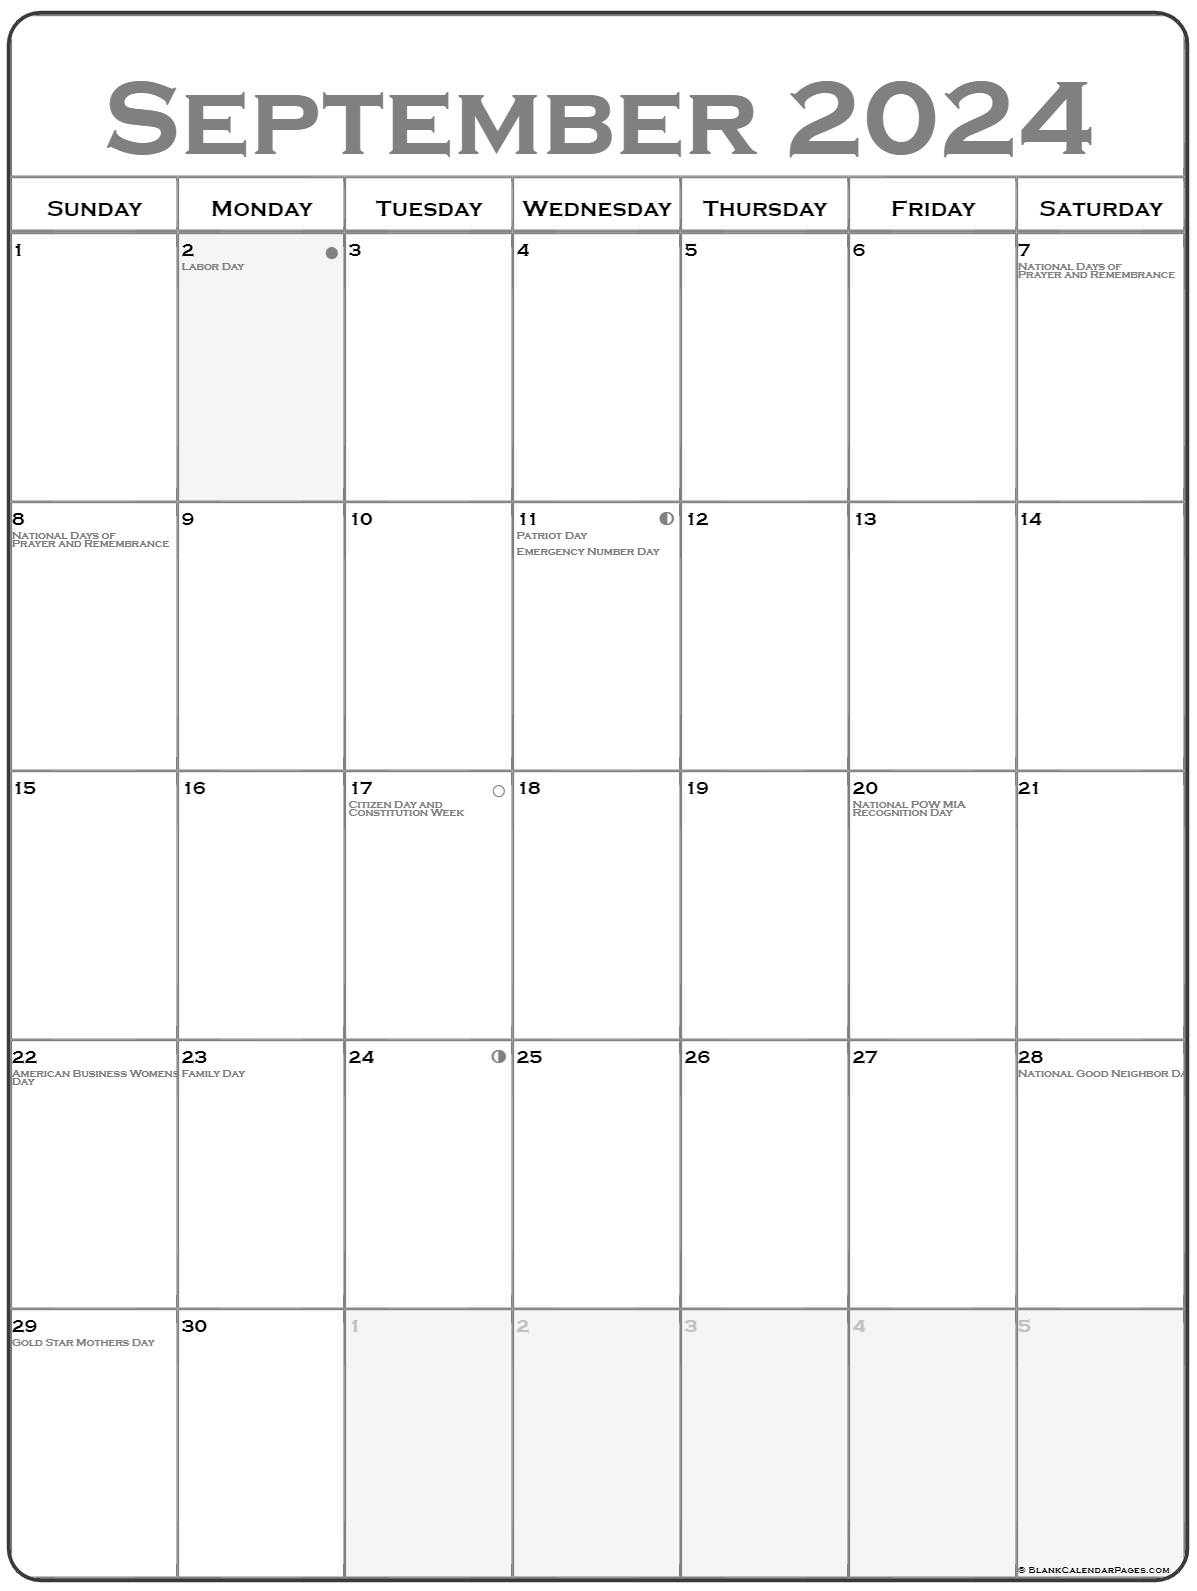 september-monday-2024-calendar-printable-calendar-quickly-riset